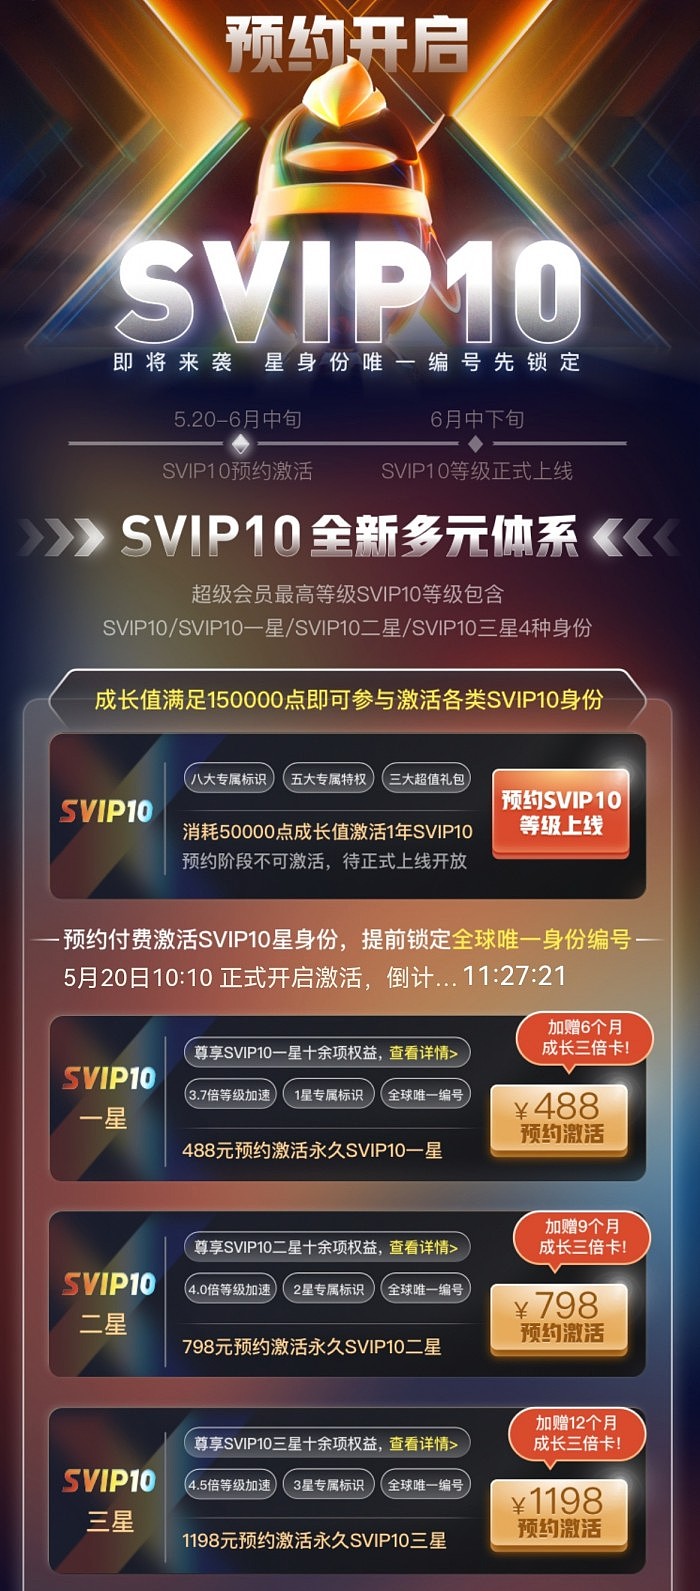 QQ超级会员新增SVIP10 1198元永久激活三星 - 1